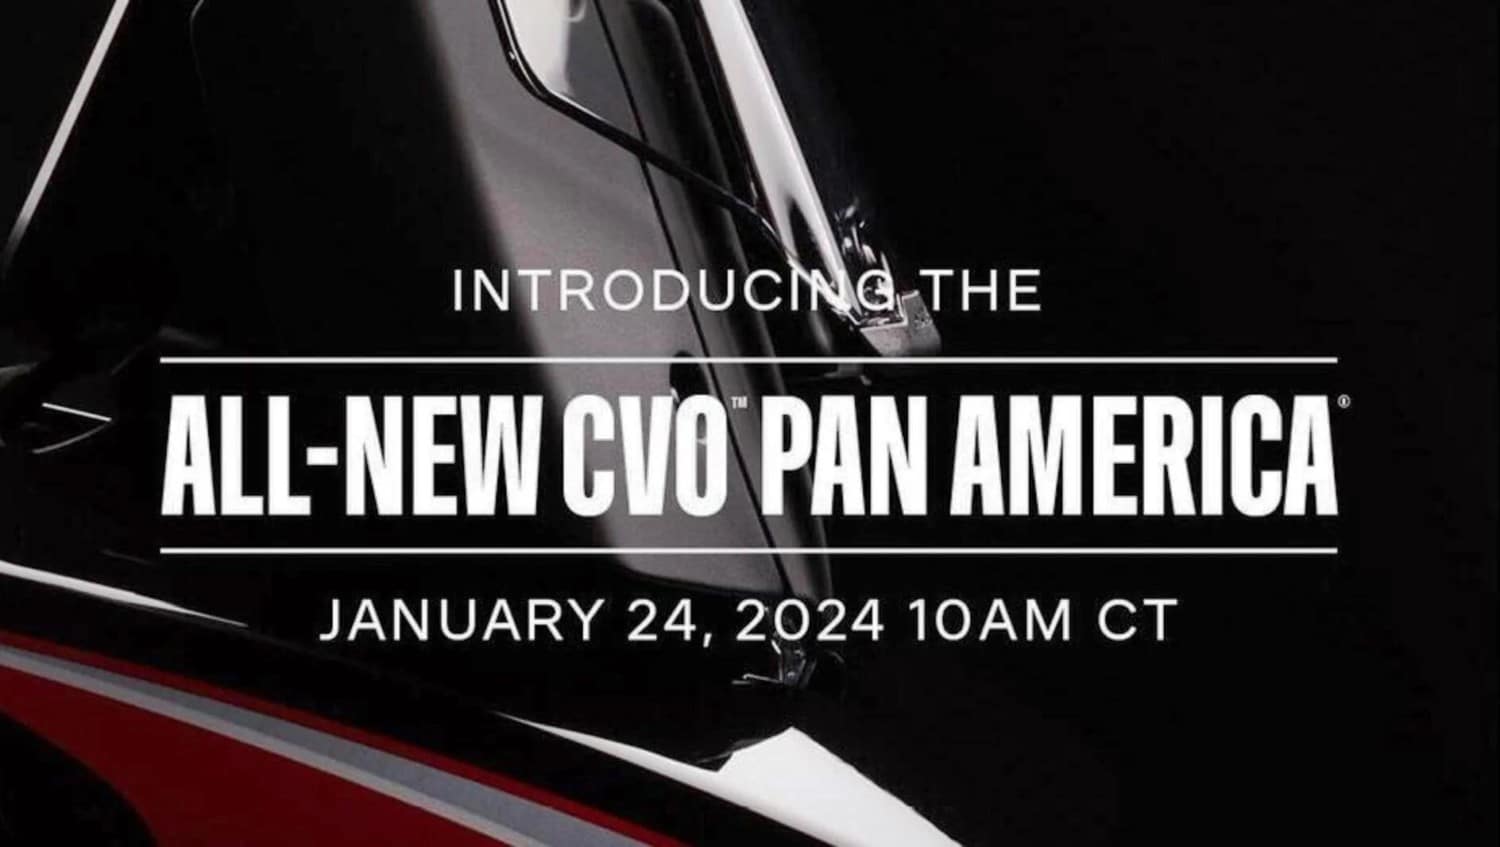 Ny Harley-Davidson CVO Pan America